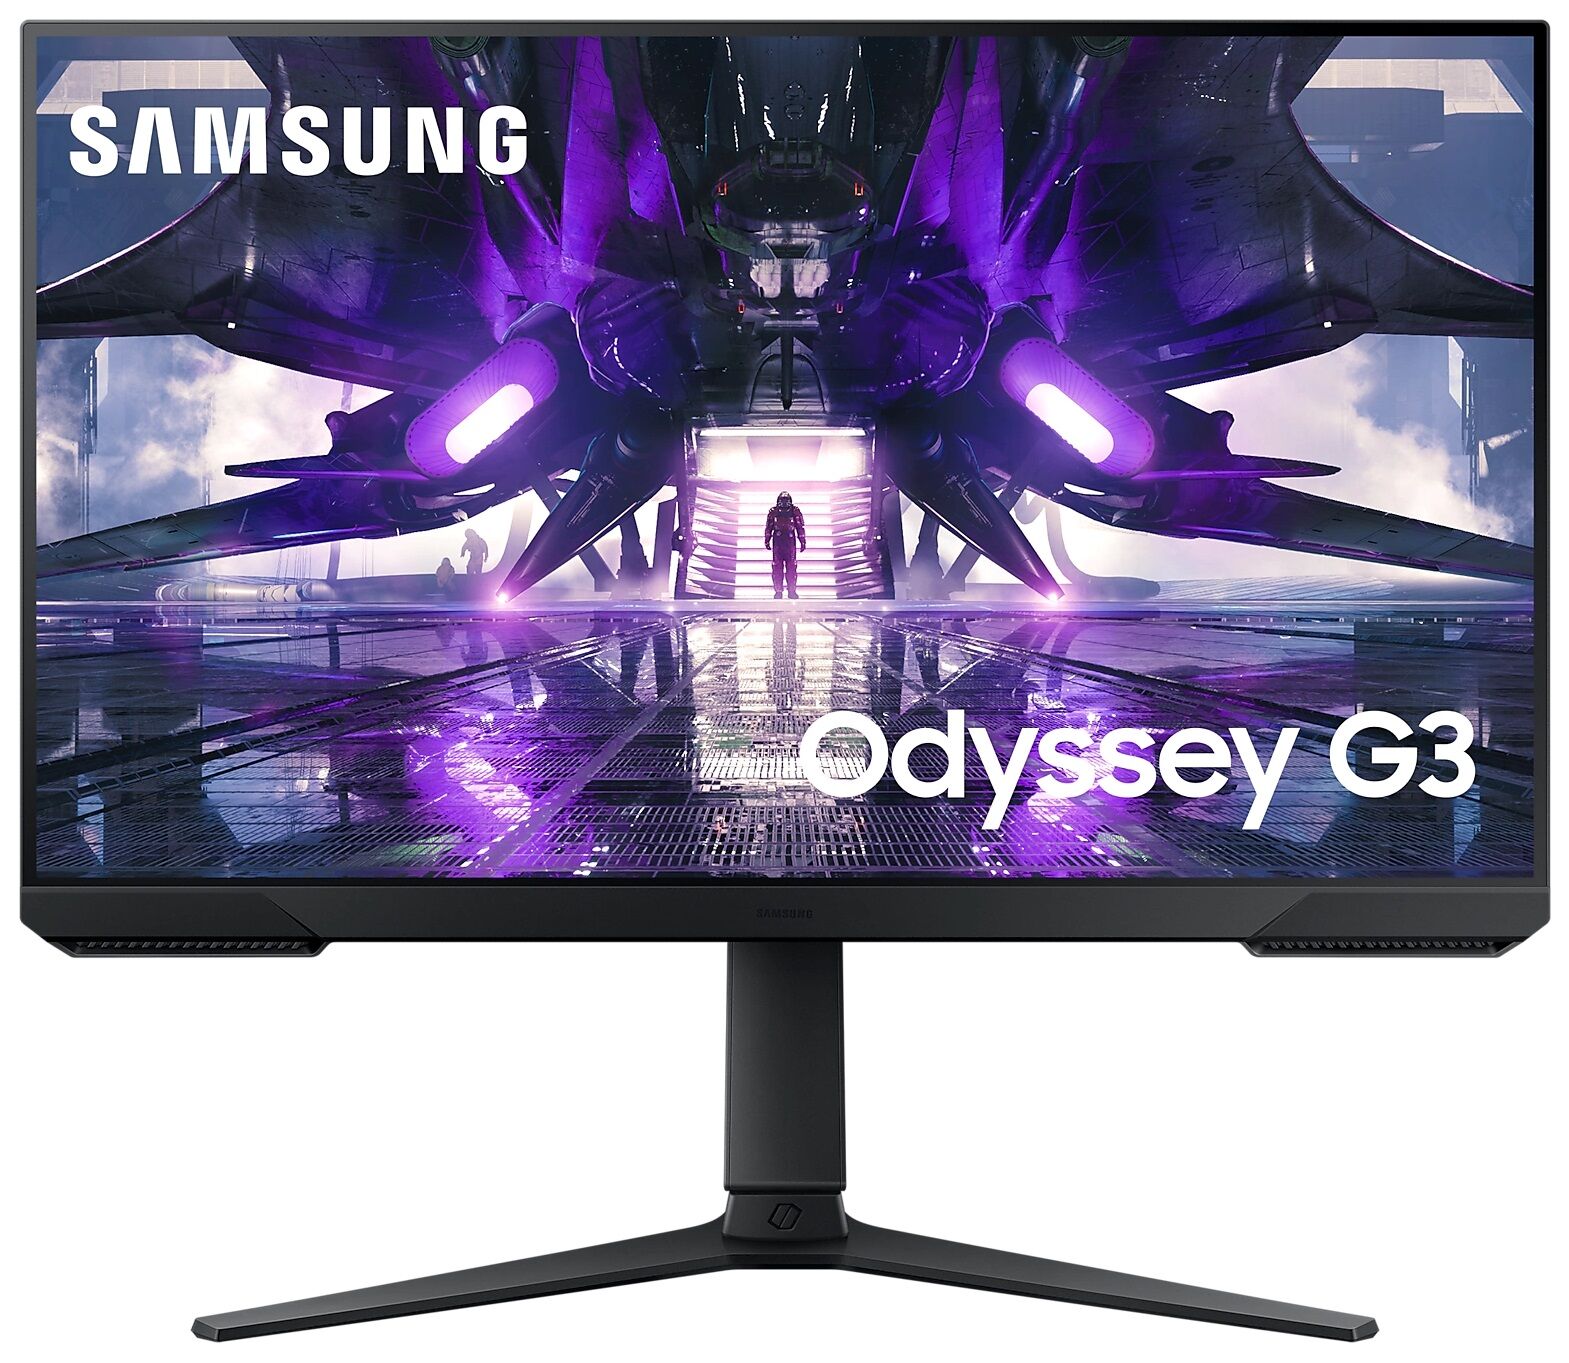 Samsung Monitor Odyssey G3 27" Fhd 144hz Freesync (preto) - Samsung